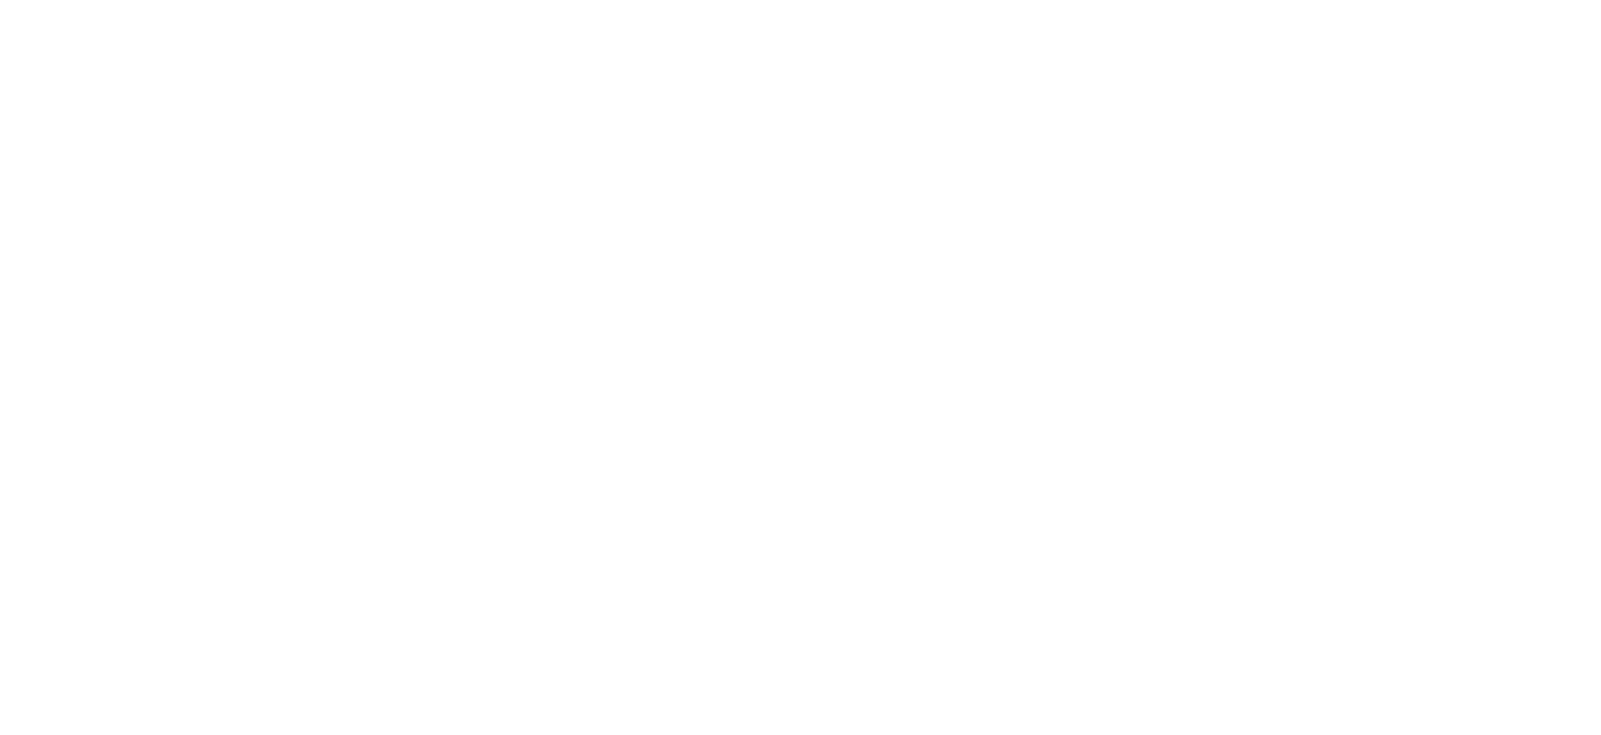 Tejedurías Textiles